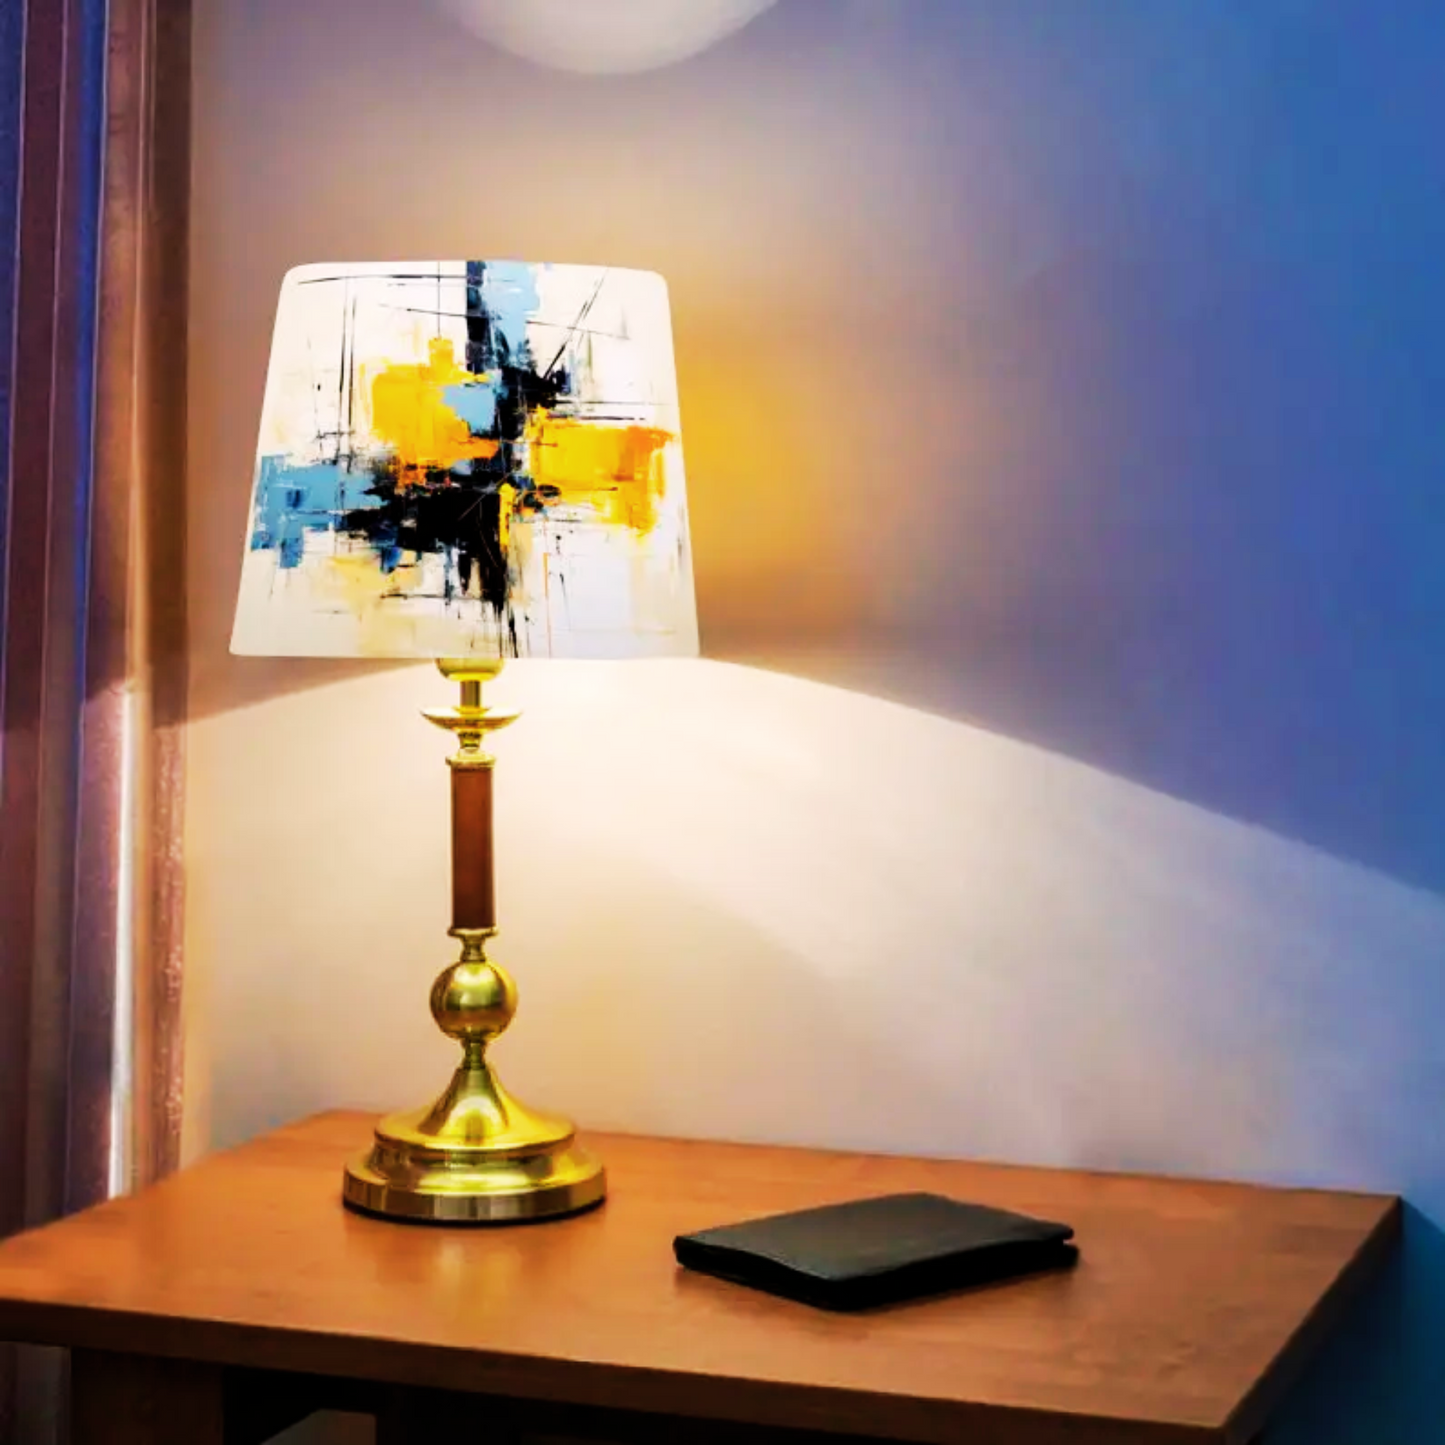 CD156-DM-H 8" x W 12" ; Bell Lamp Shade; Handmade Lamp Shades, Lamp shade for table lamp; Vintage Lamp Shade; Fabric lamp Shade.